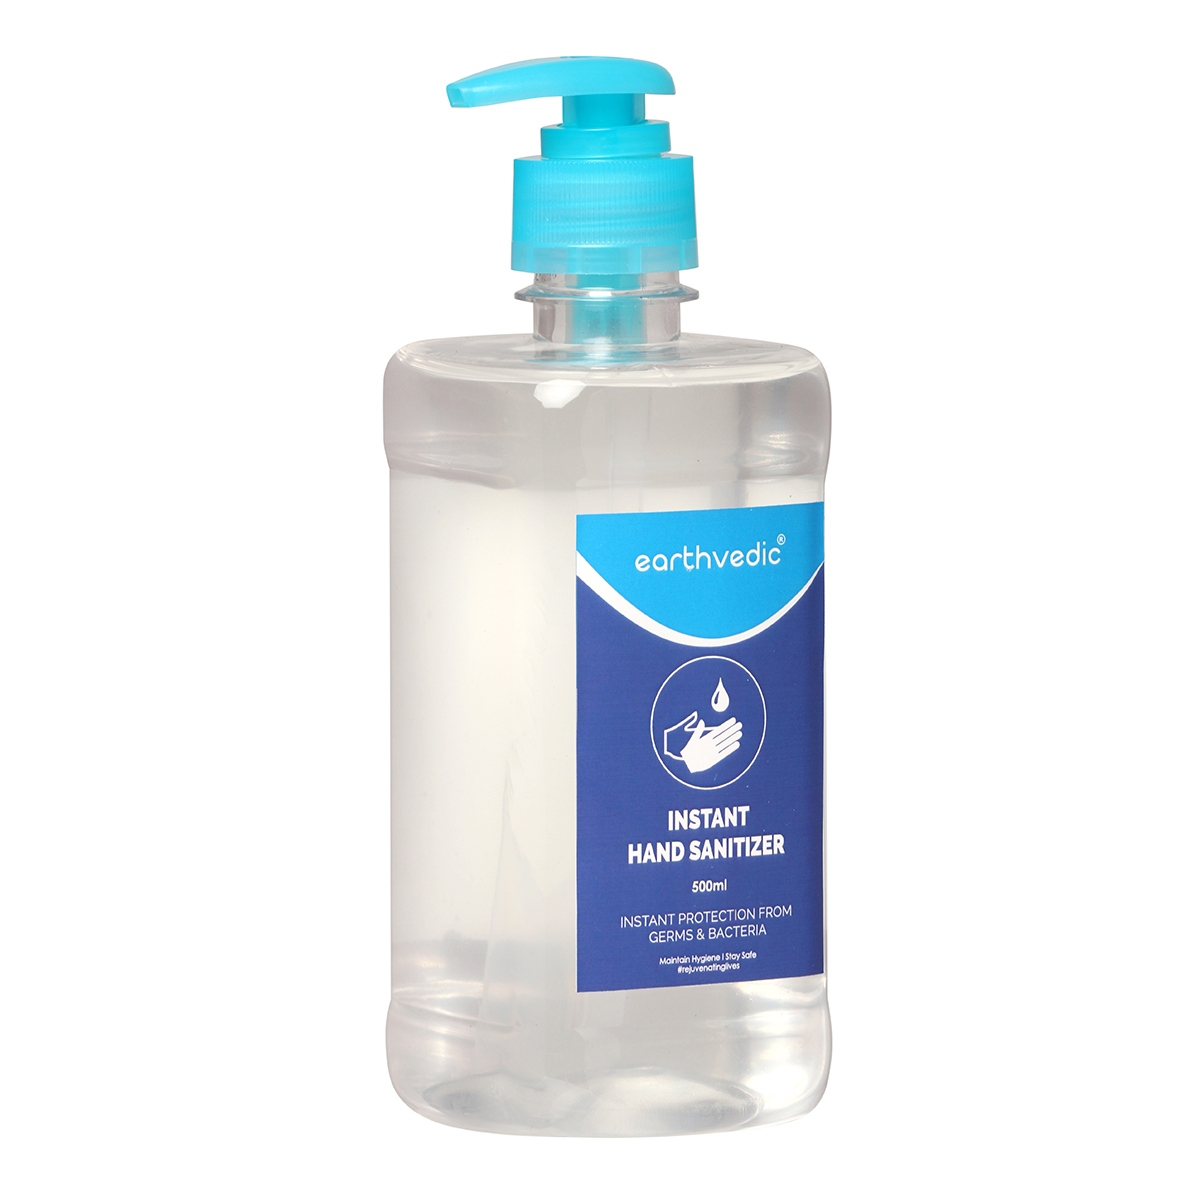 earthvedic instant hand sanitizer gel-side